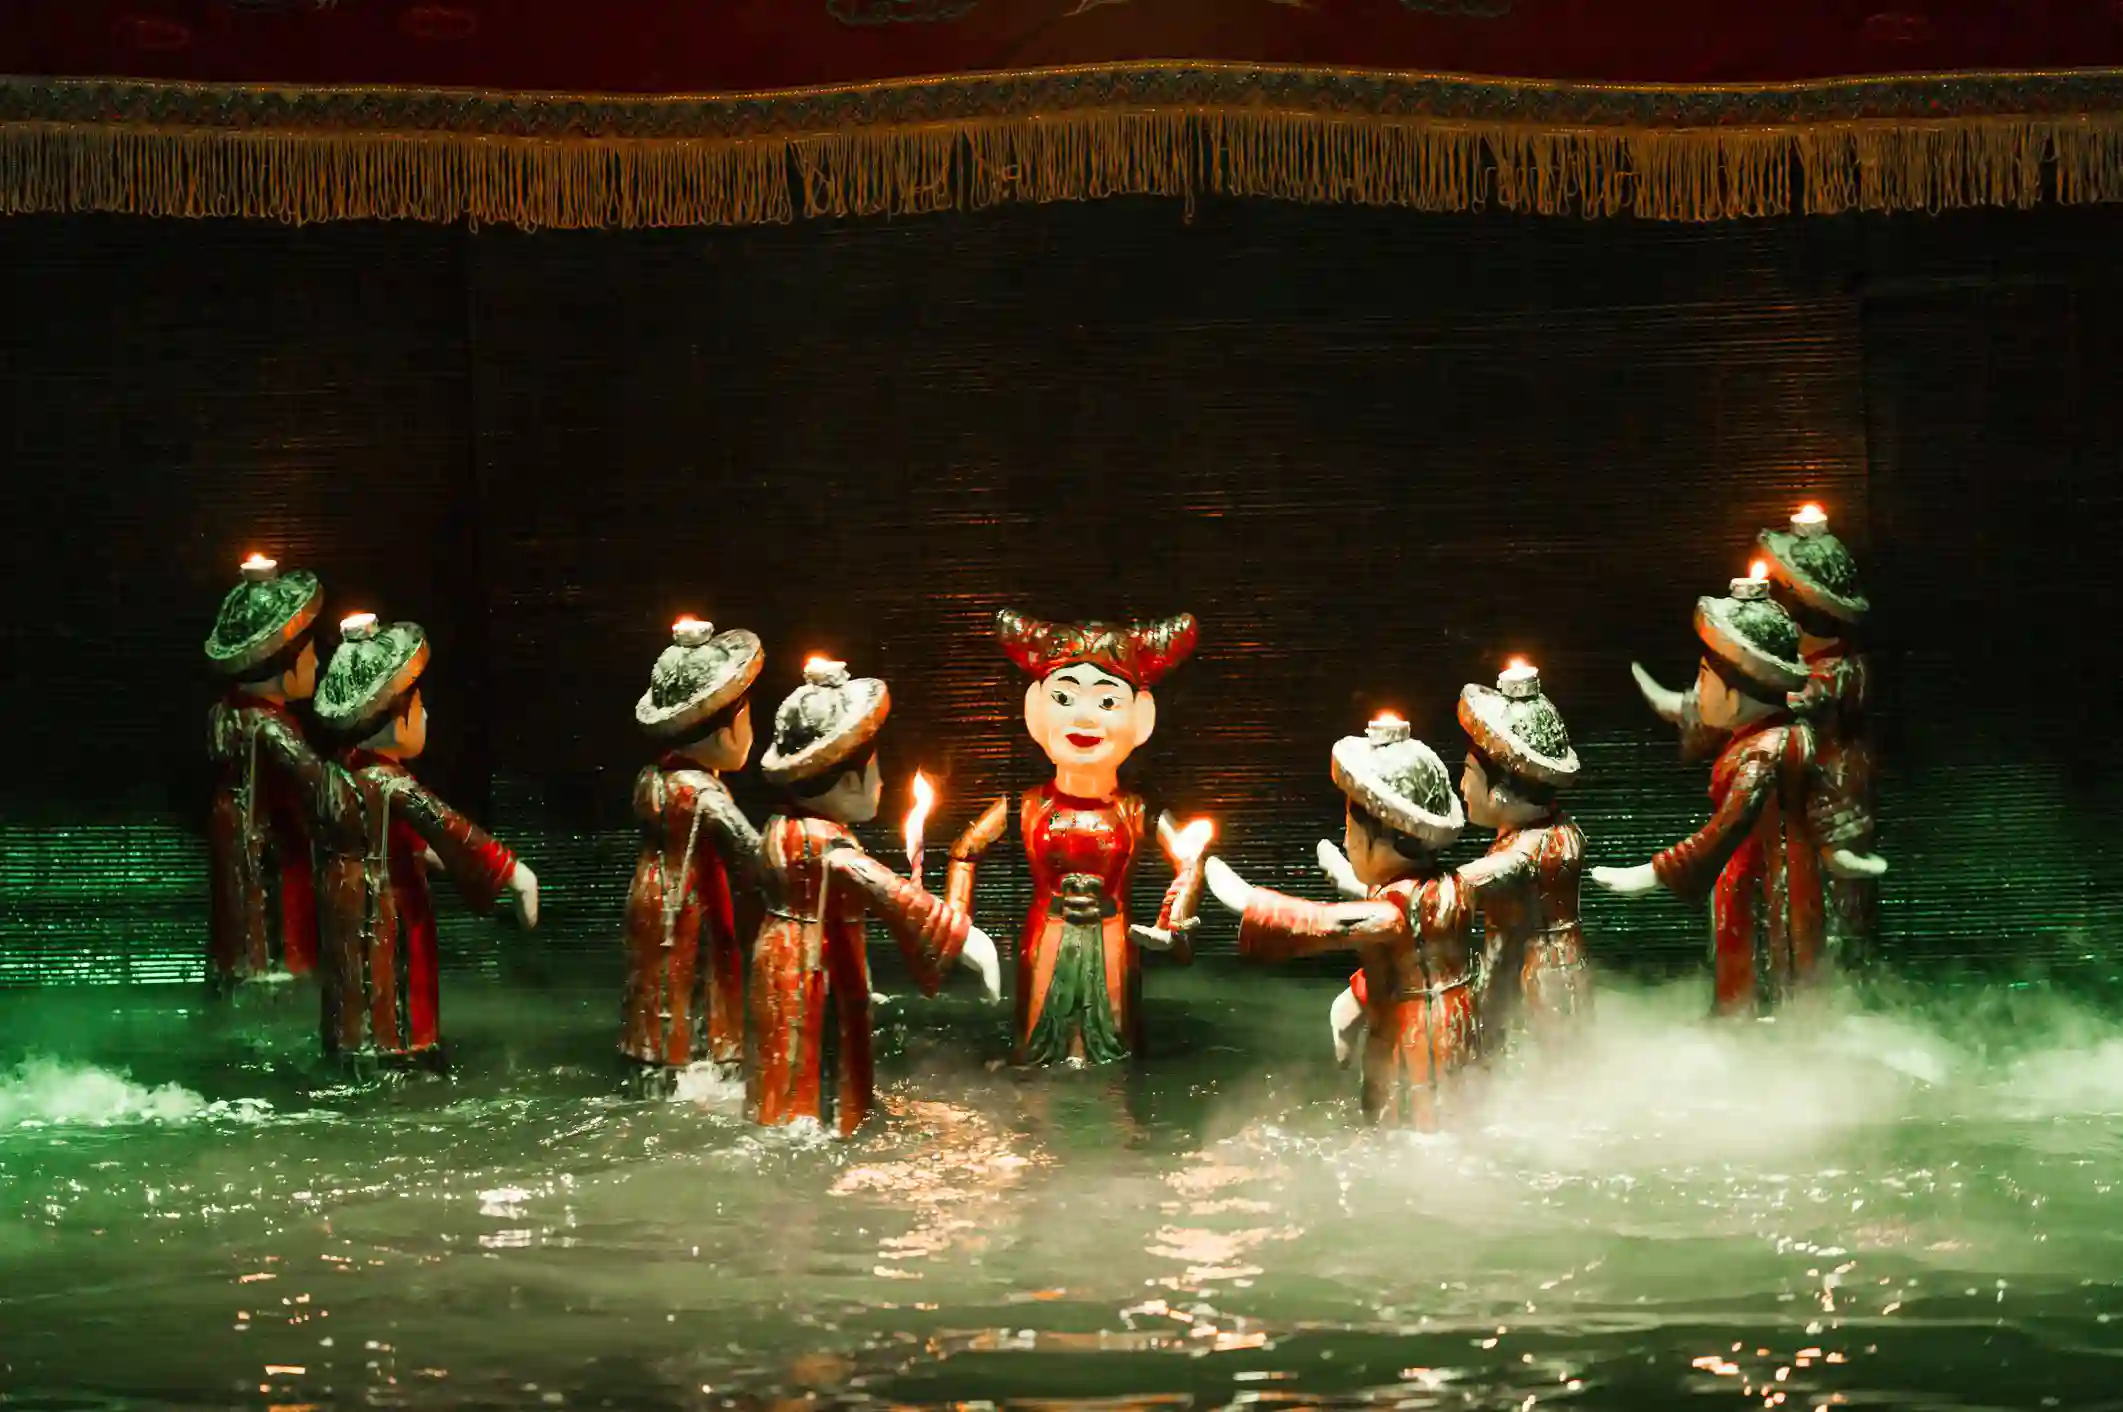 وجهات سياحية رخيصة مسرح عرائس الماء في هانوي فيتنام